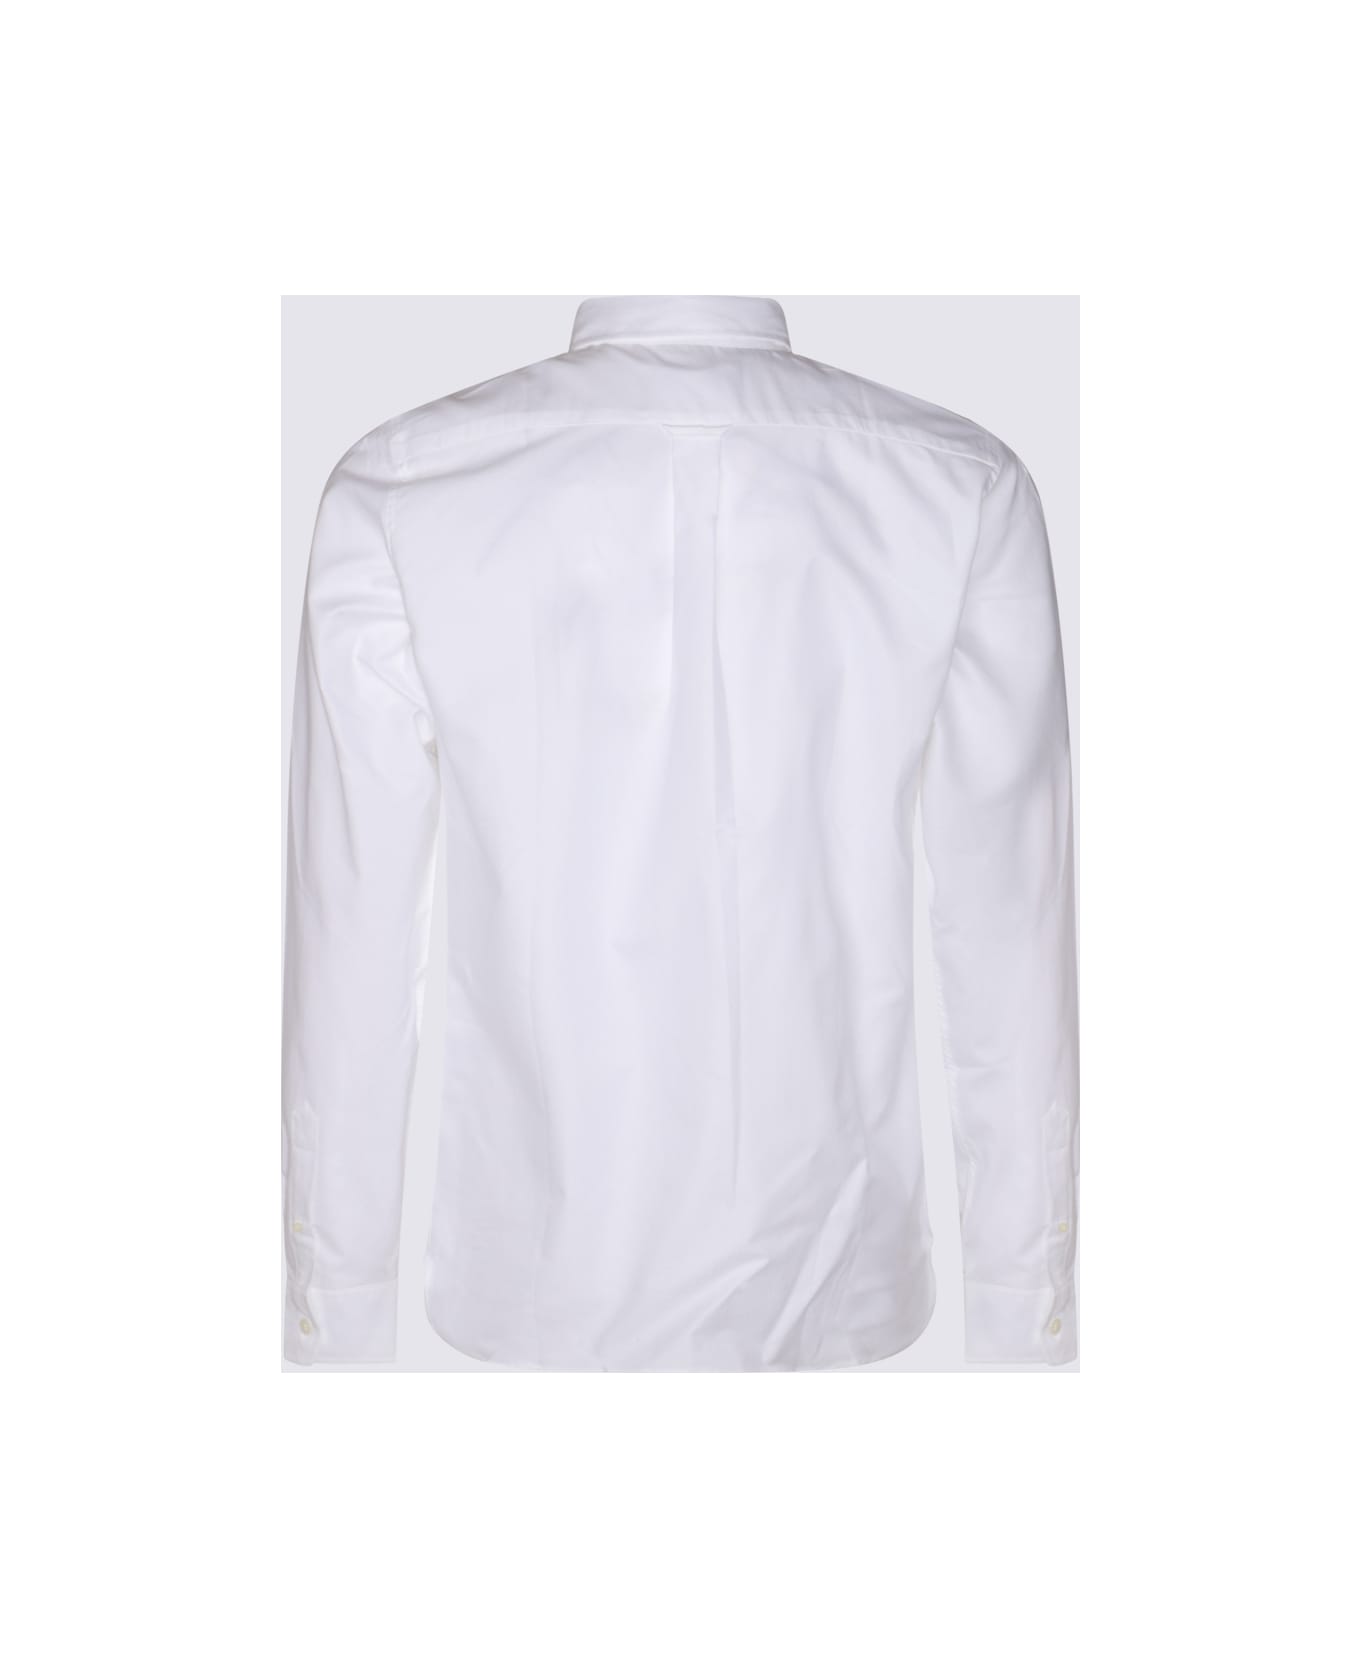 Maison Kitsuné White Cotton Shirt - White シャツ